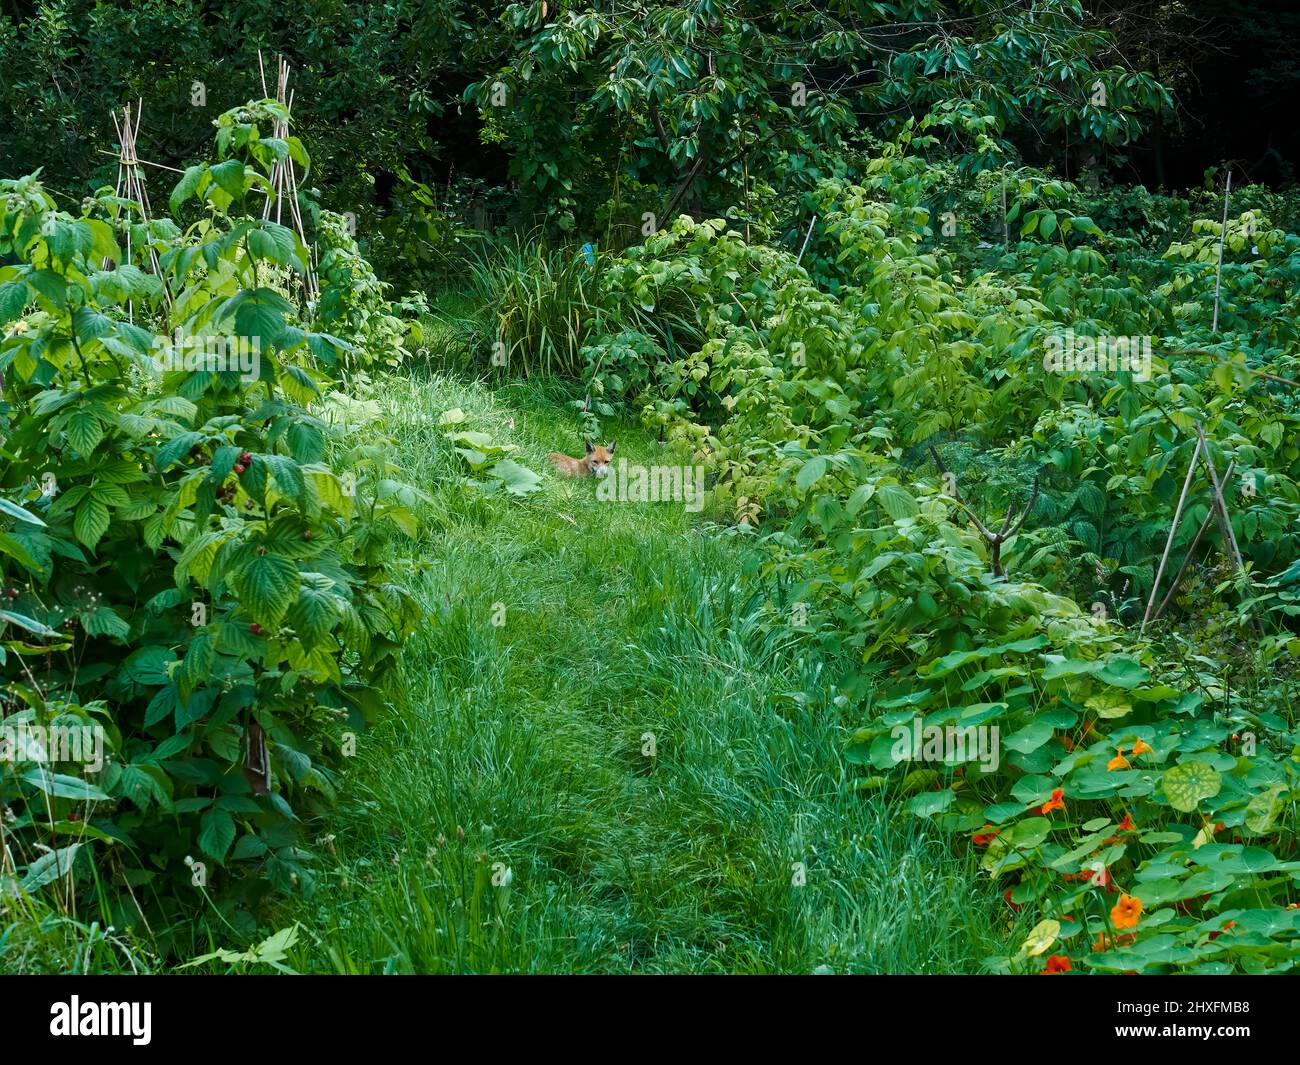 Un renard roux (capturé un peu unawares) repose à l'ombre d'un jardin bien entretenu, se cachant du soleil fort parmi les cannes à fruits. Banque D'Images